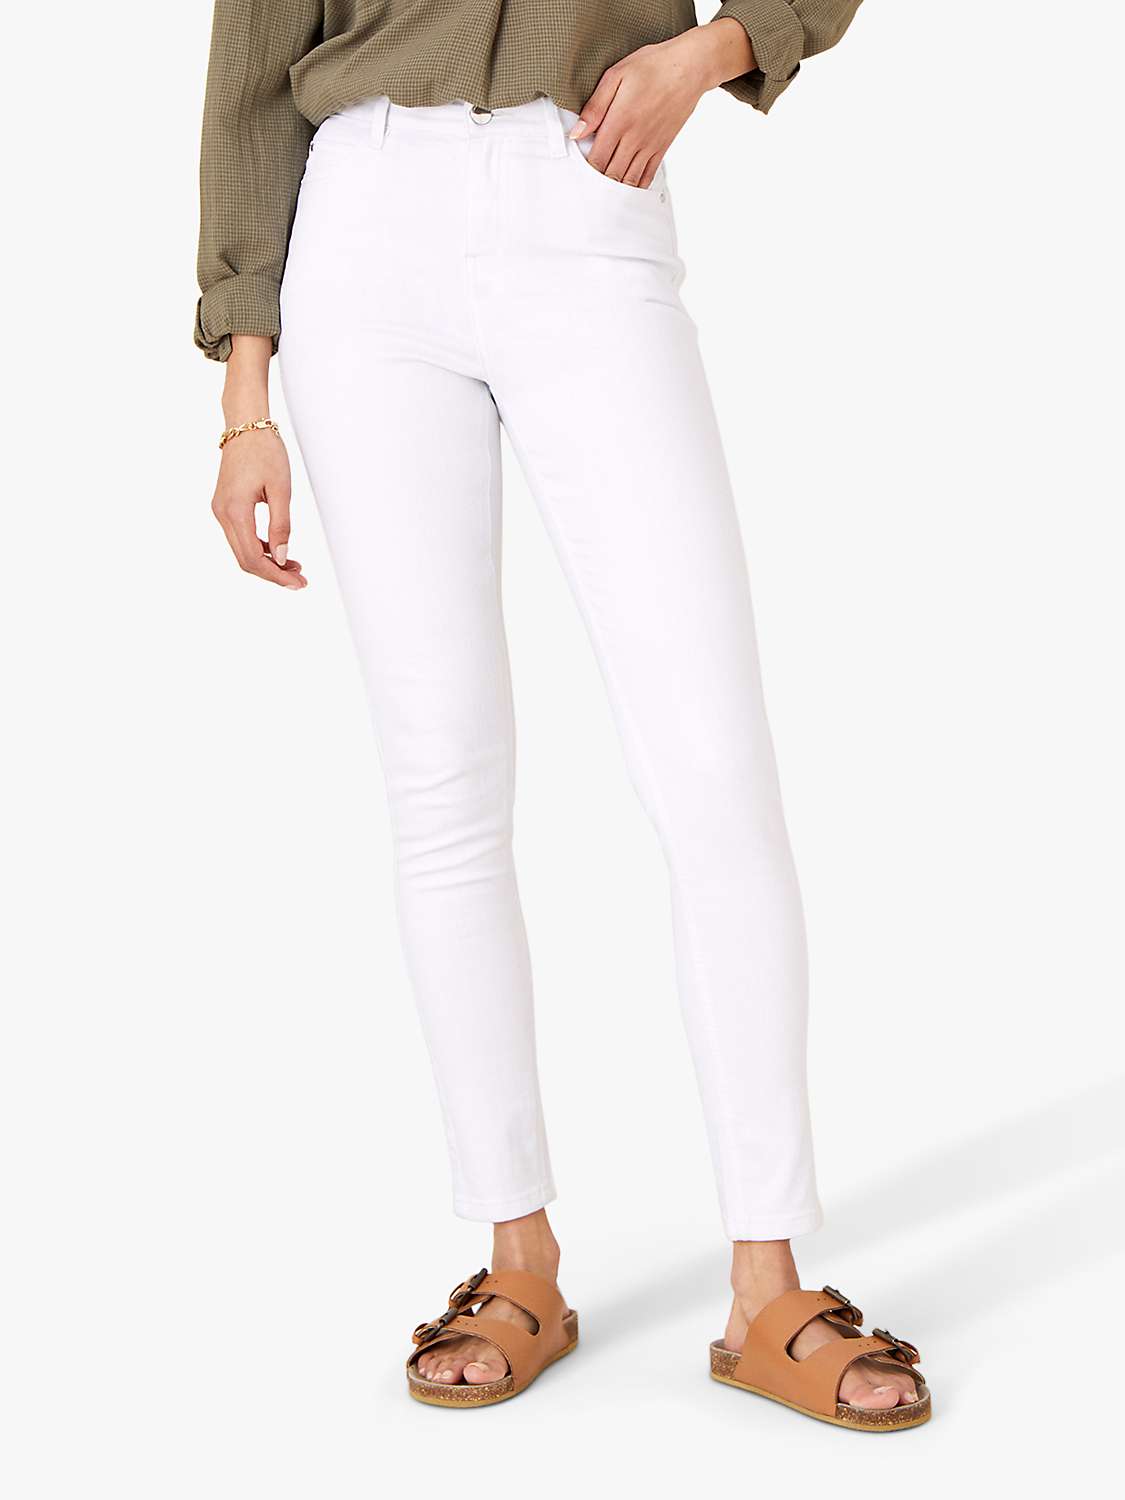 Buy Monsoon Iris Regular Length Skinny Jeans, White Online at johnlewis.com